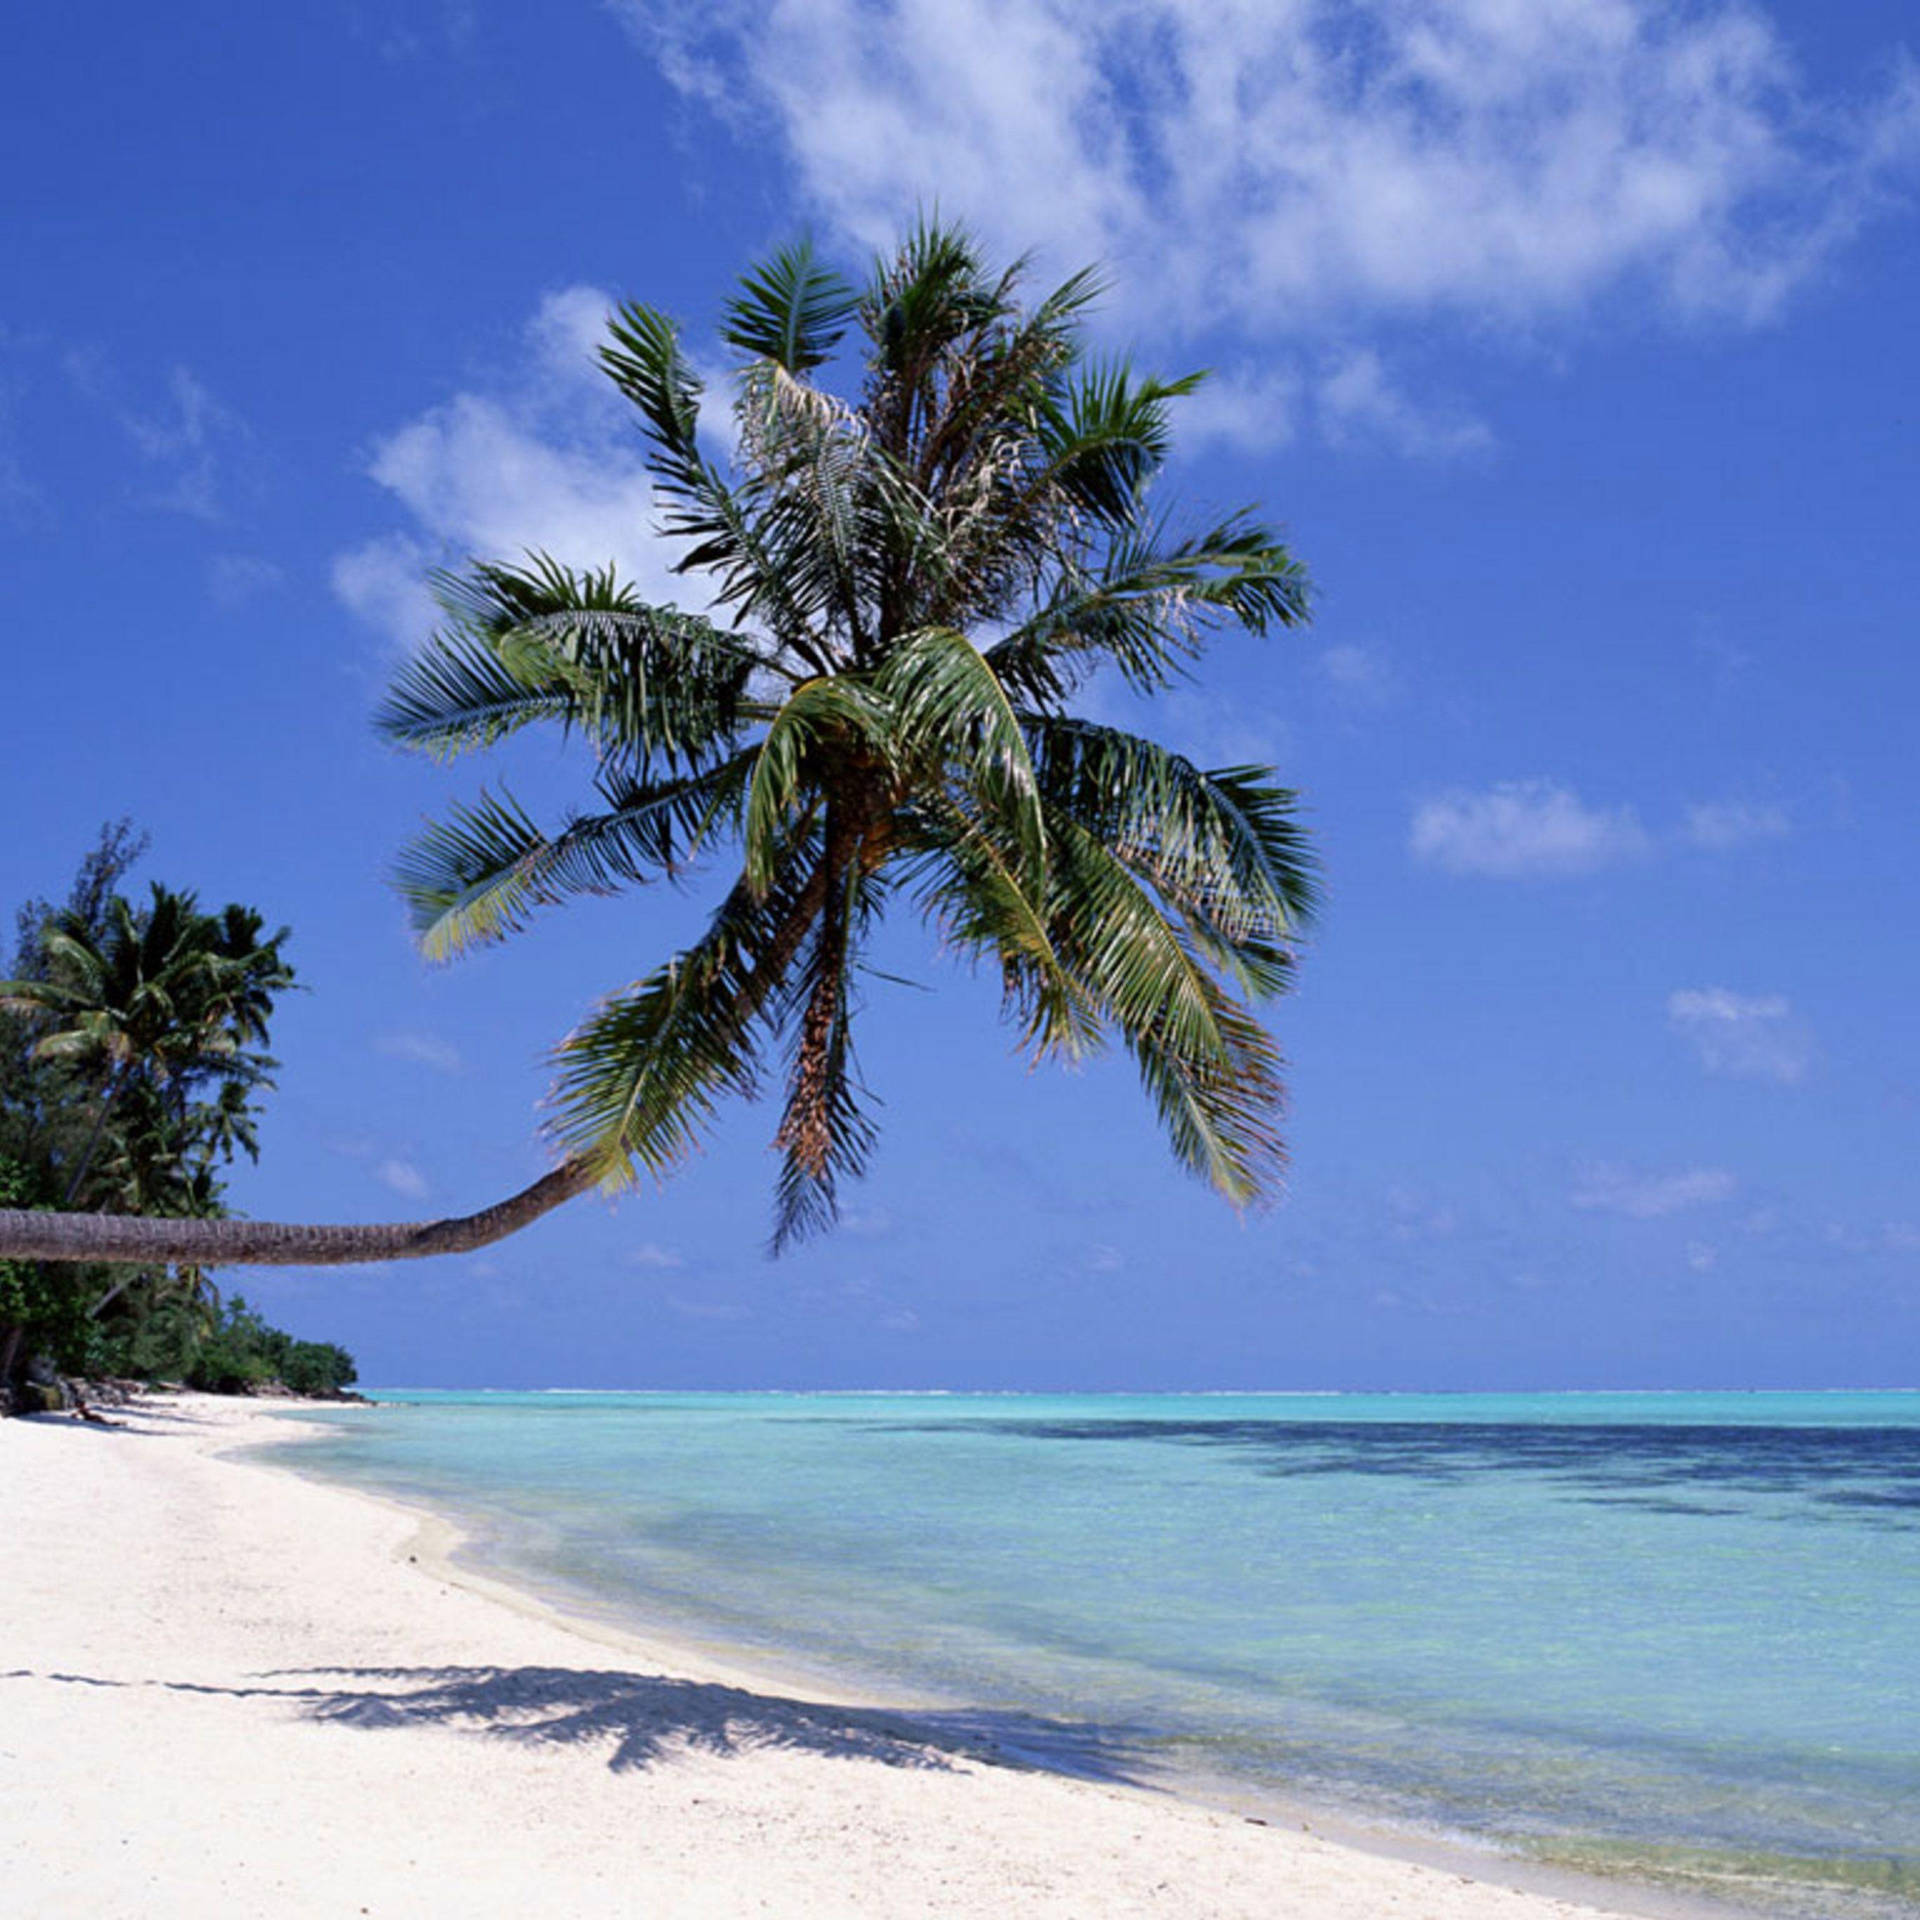 Ipad Pro Palm Tree On Sandy Beach